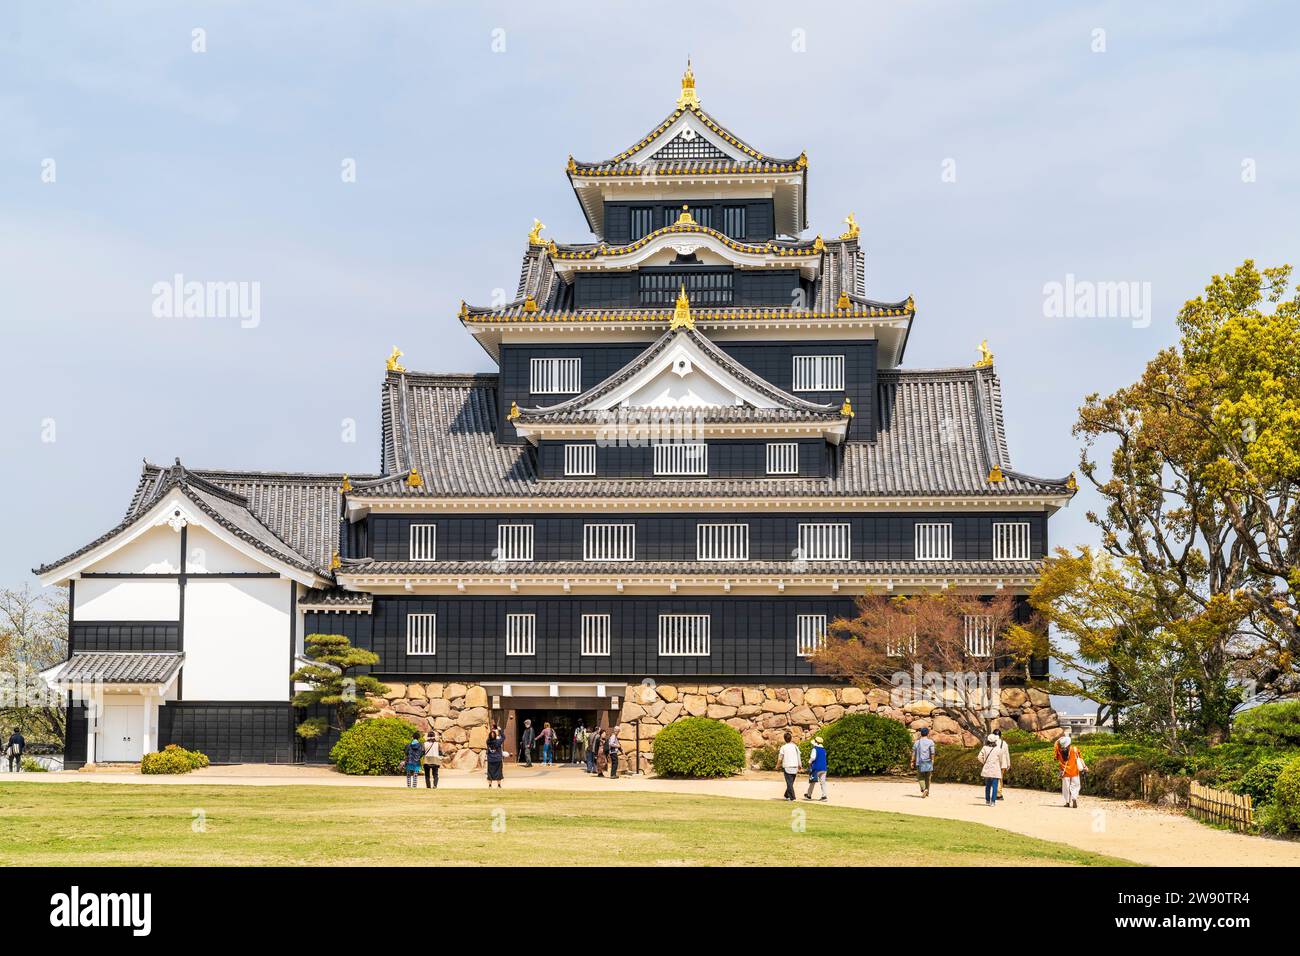 Le donjon noir reconstitué en béton, tenshu, du château d'Okayama avec ses fenêtres blanches à volets lors d'une journée ensoleillée de printemps avec un ciel bleu derrière. Banque D'Images